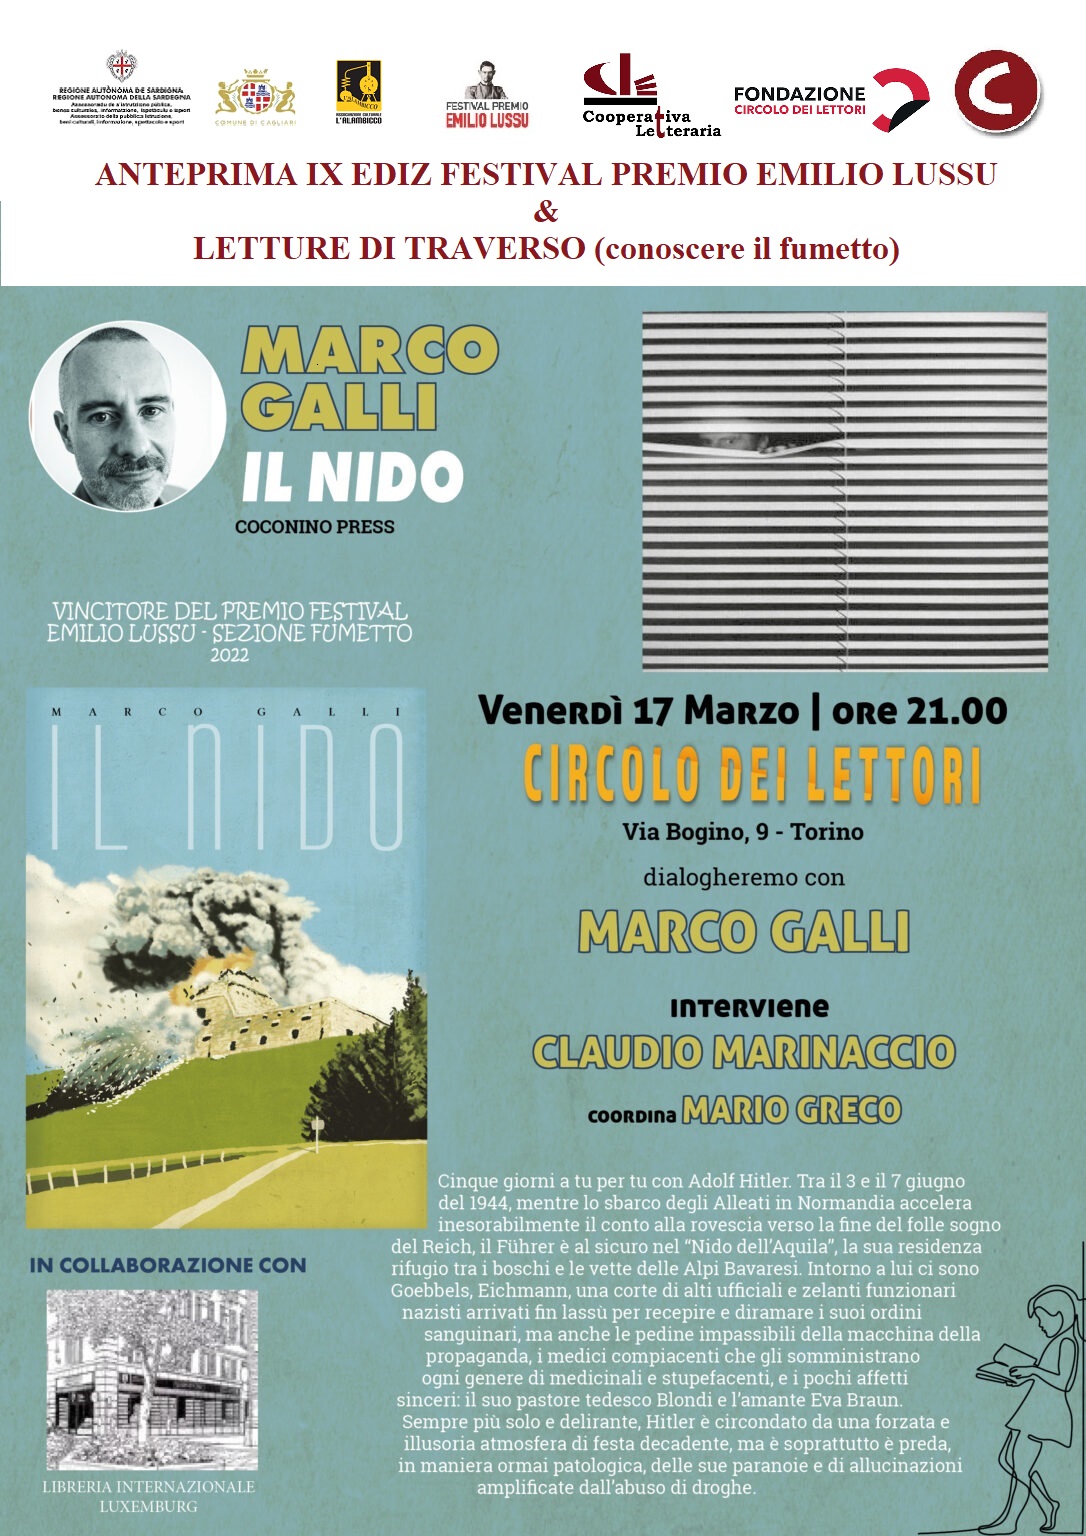 Anteprima IX Edizione. Presentazione Del Fumetto “Il Nido” (Coconino Press, 2022)